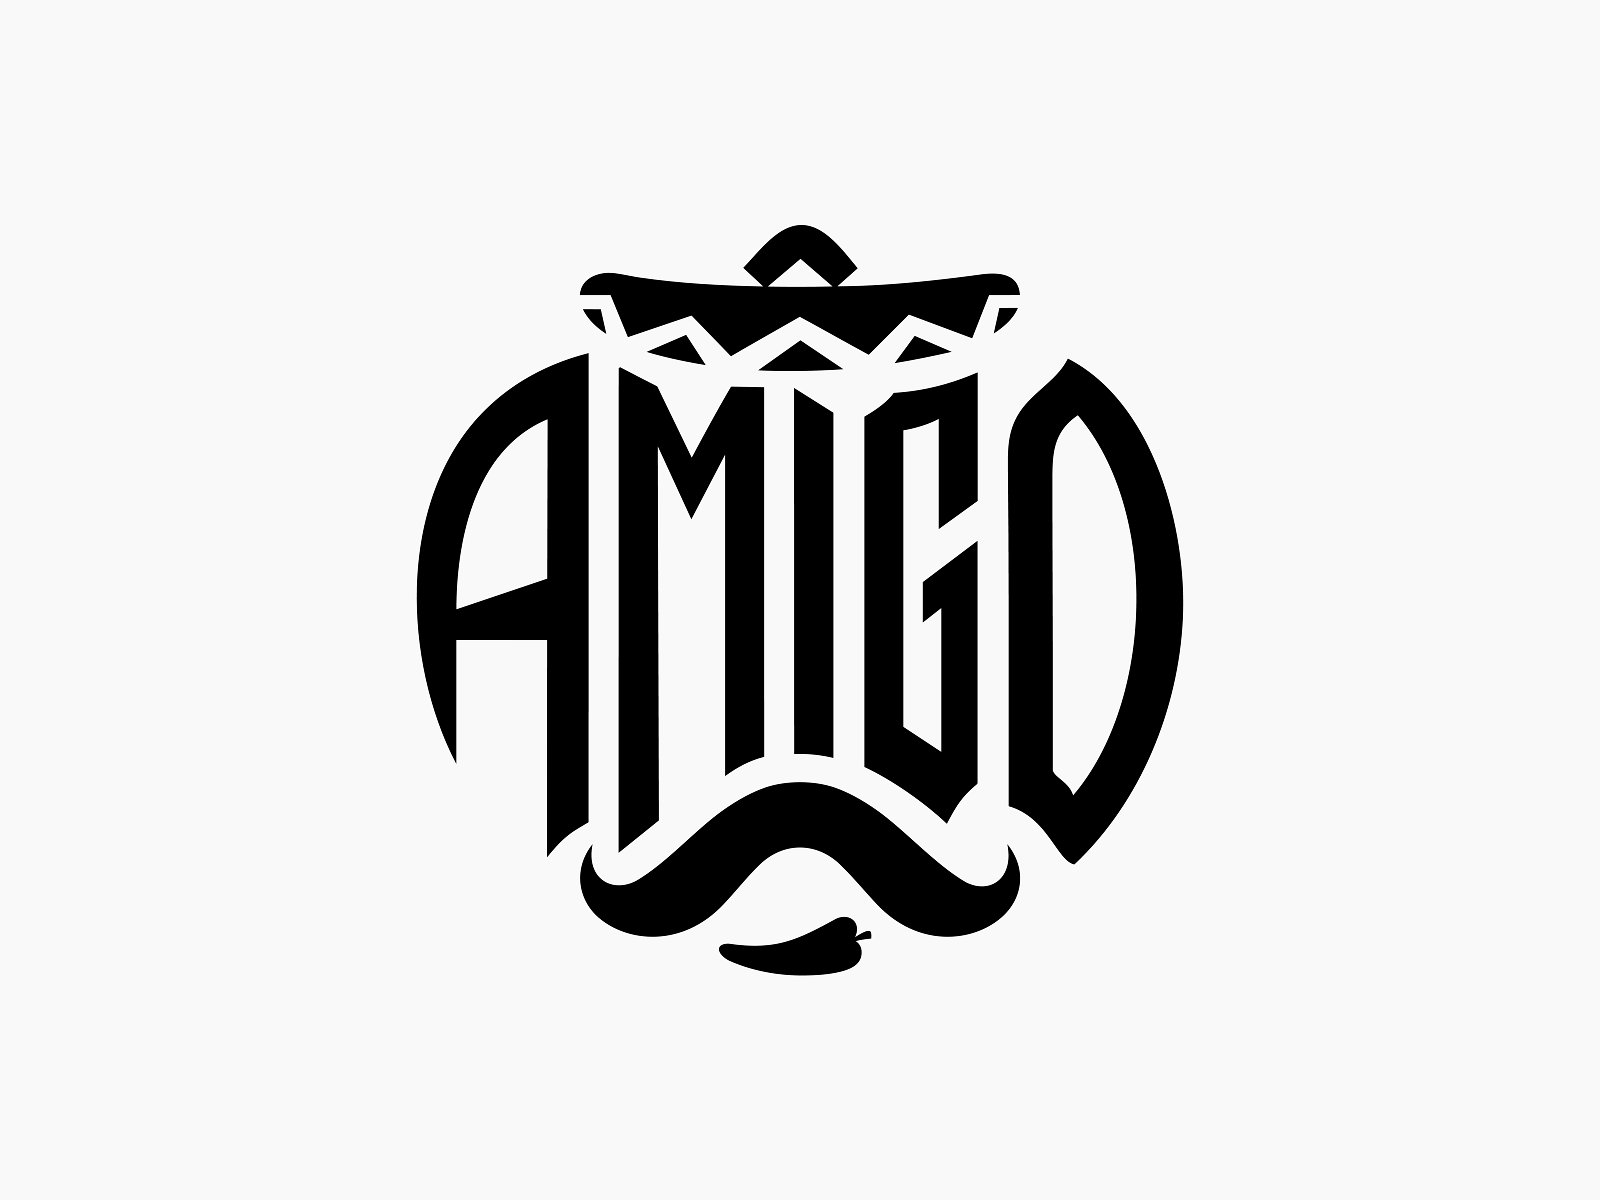 Amigo logo hi-res stock photography and images - Alamy